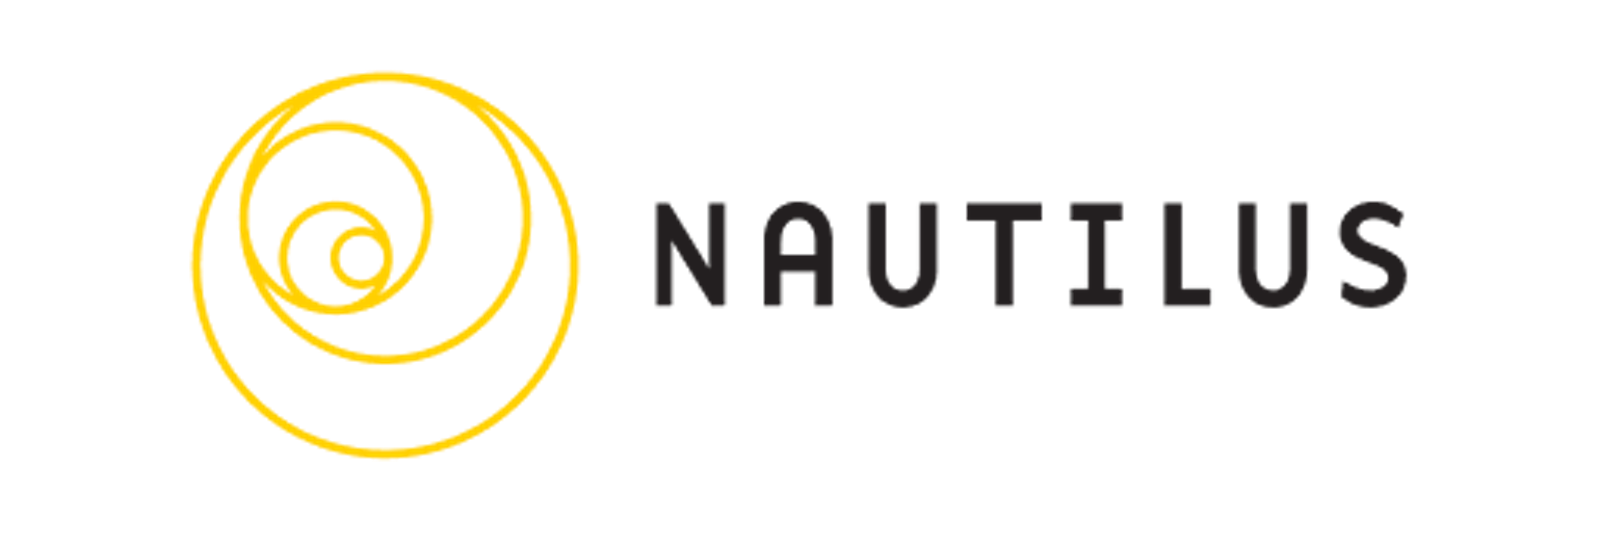 Nautilus logo